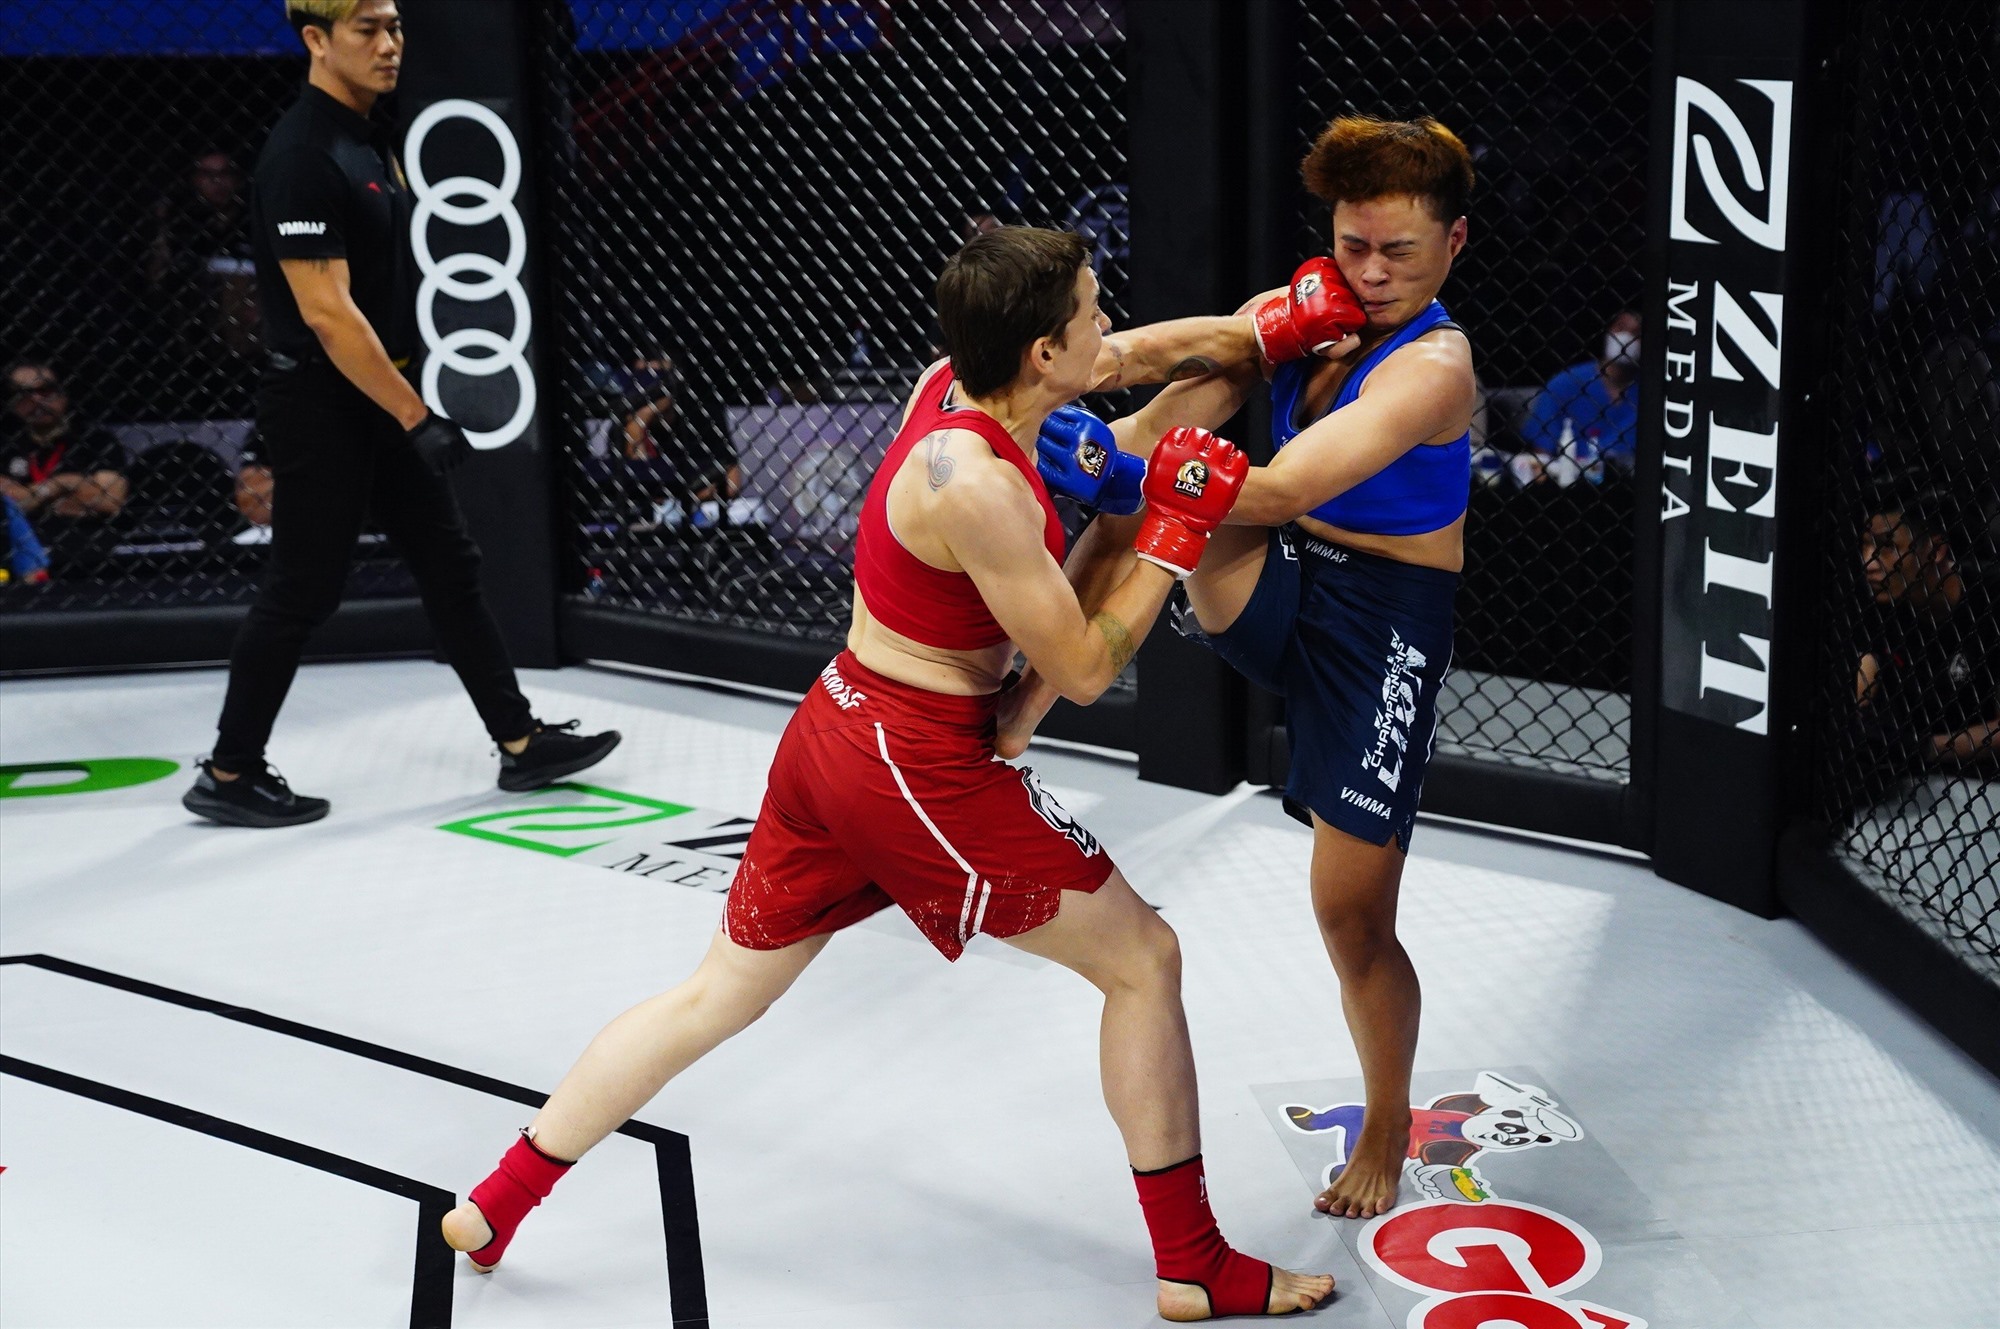 Ở hạng 56kg nữ, Bianka Balajti  (đỏ) thắng submission Nguyễn Thị Uyển Nhi  (xanh) bằng kỹ thuật siết cổ sau rear naked choke ở 4 phút 05 giây hiệp 1.